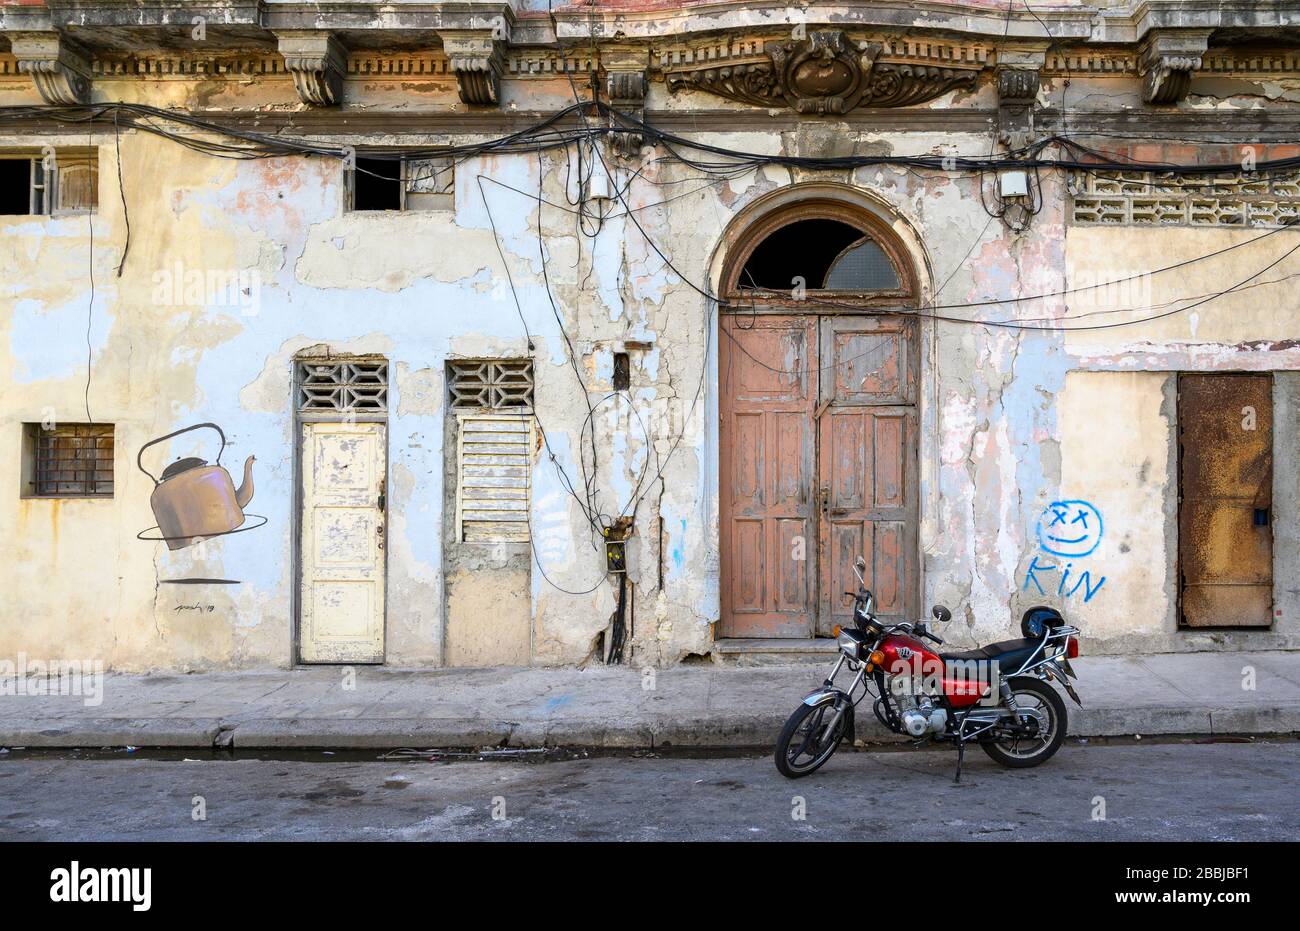 Mur à l'eau et peinture murale, Centro, la Havane, Cuba Banque D'Images